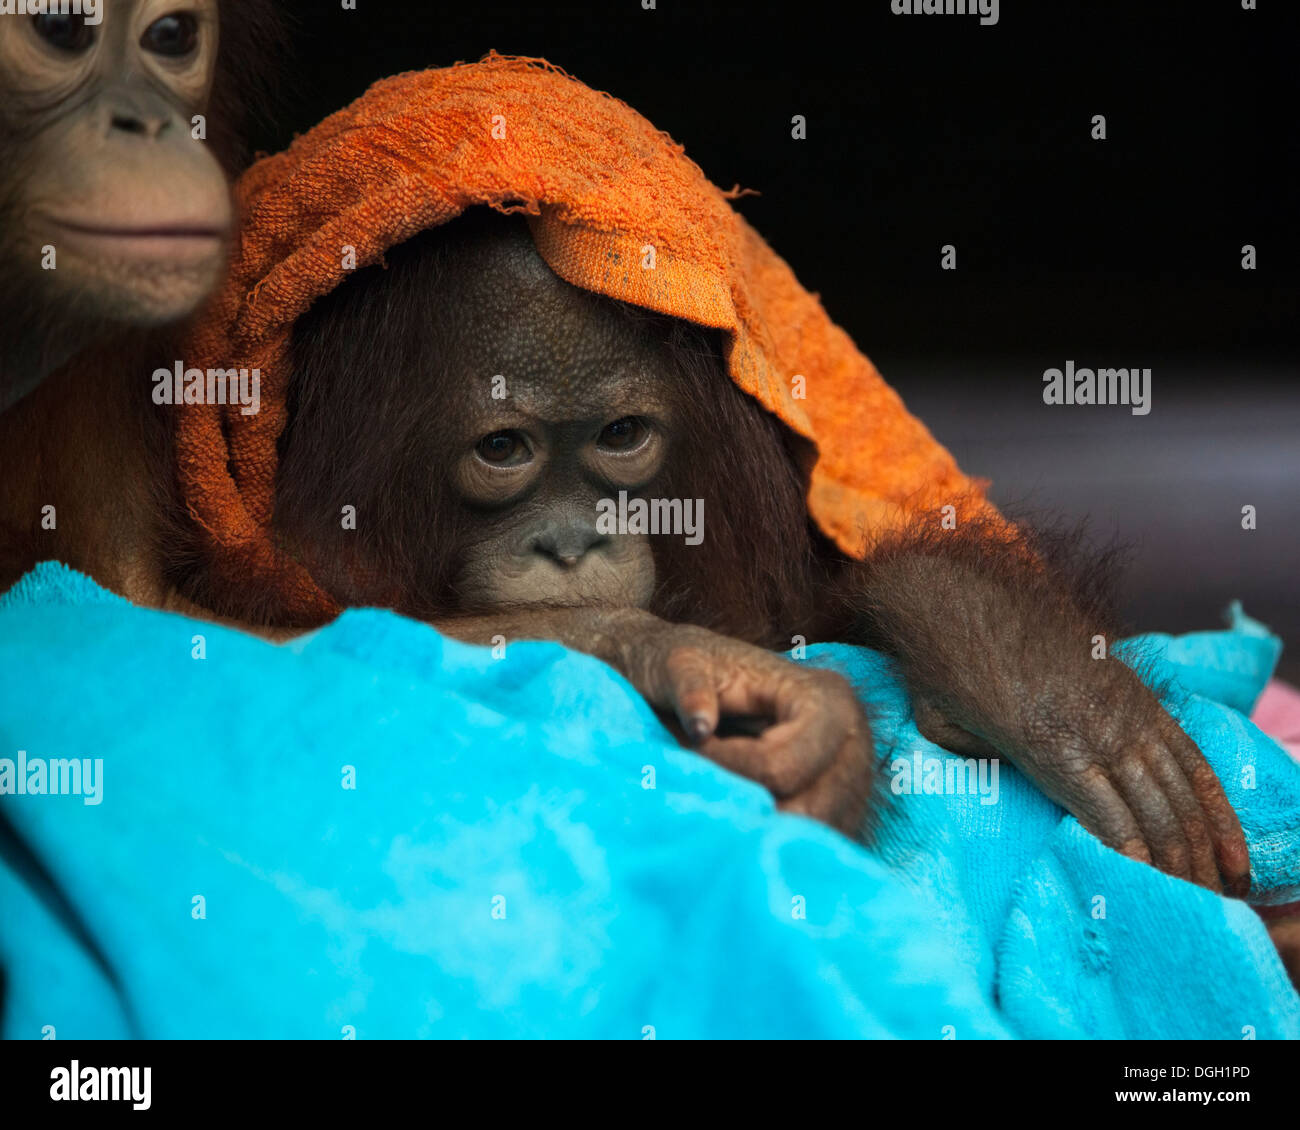 Orang-outan de bébé secouru (Pongo pygmaeus) enveloppé dans des serviettes au Centre de soins d'Orangutan et à la quarantaine Banque D'Images